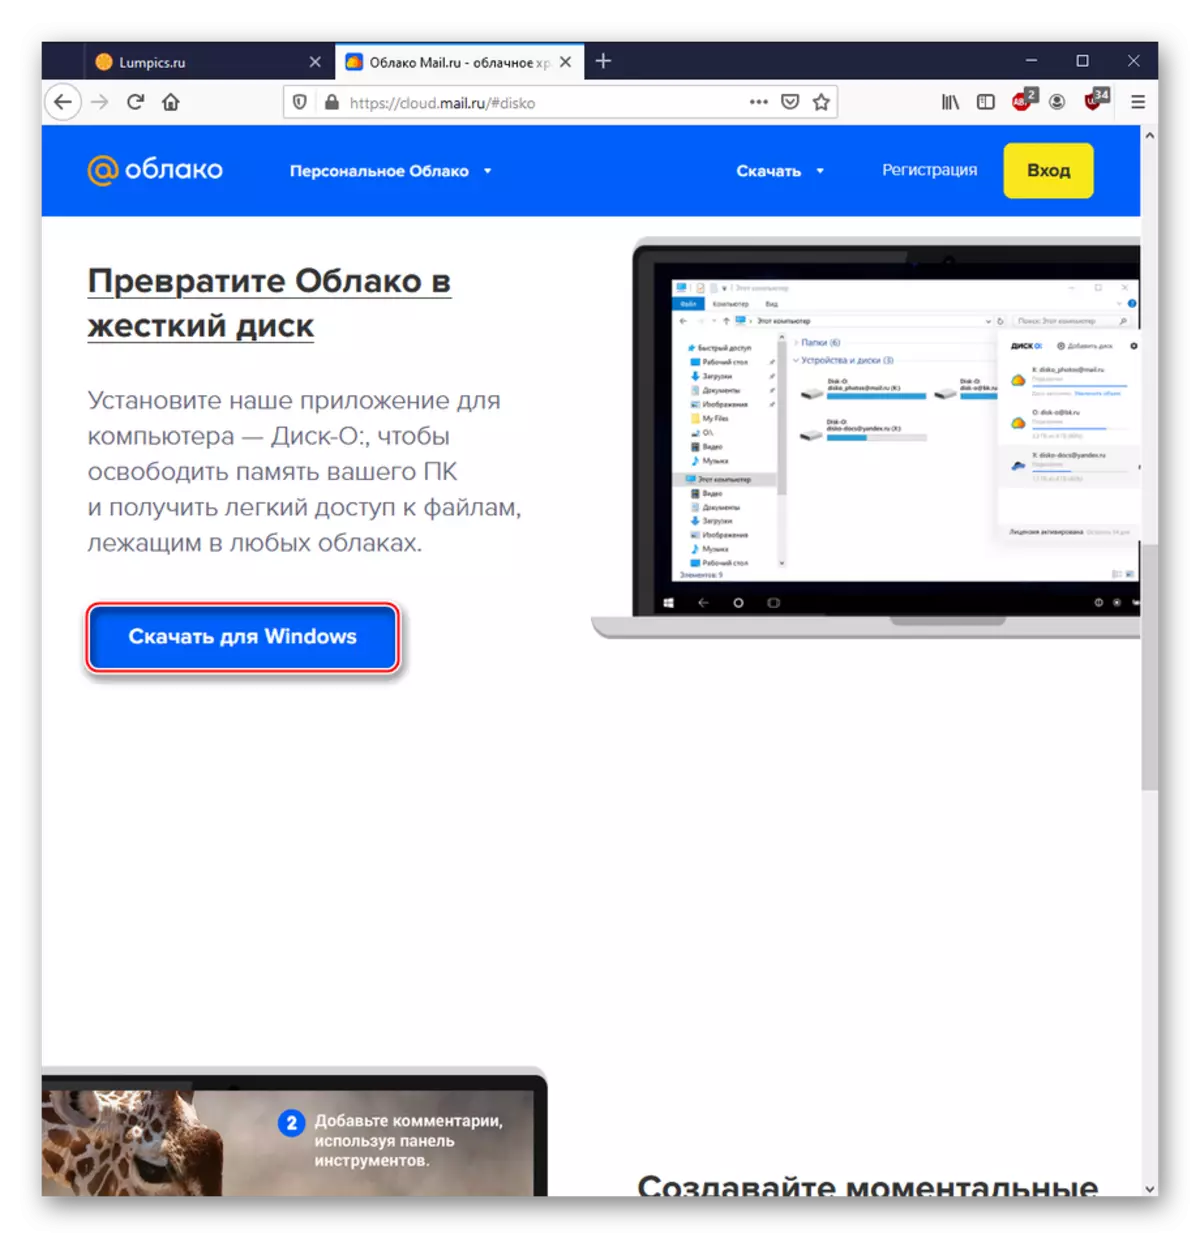 Descargando un programa de PC para trabajar con el Servicio Cloud@mail.ru